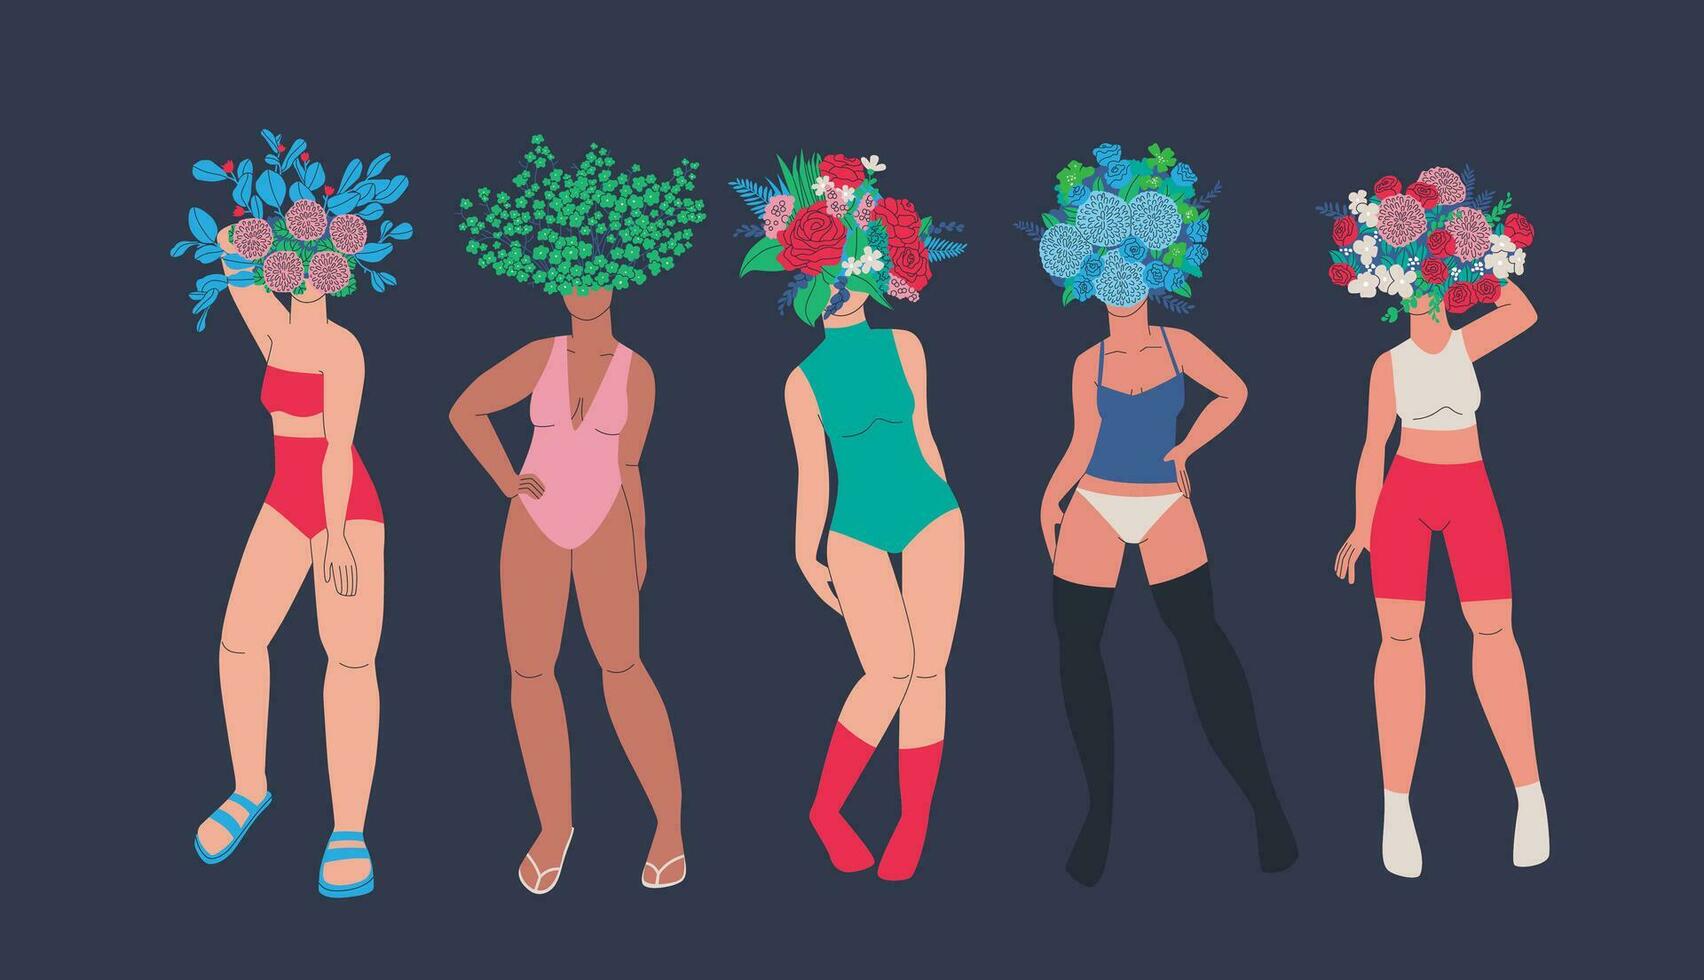 Frauen mit enorm Blumensträuße von Blumen auf ihr Köpfe. schön weiblich Körper im Badeanzüge oder Dessous Pose mit verschiedene Blumen und Pflanzen. Vektor Illustration.